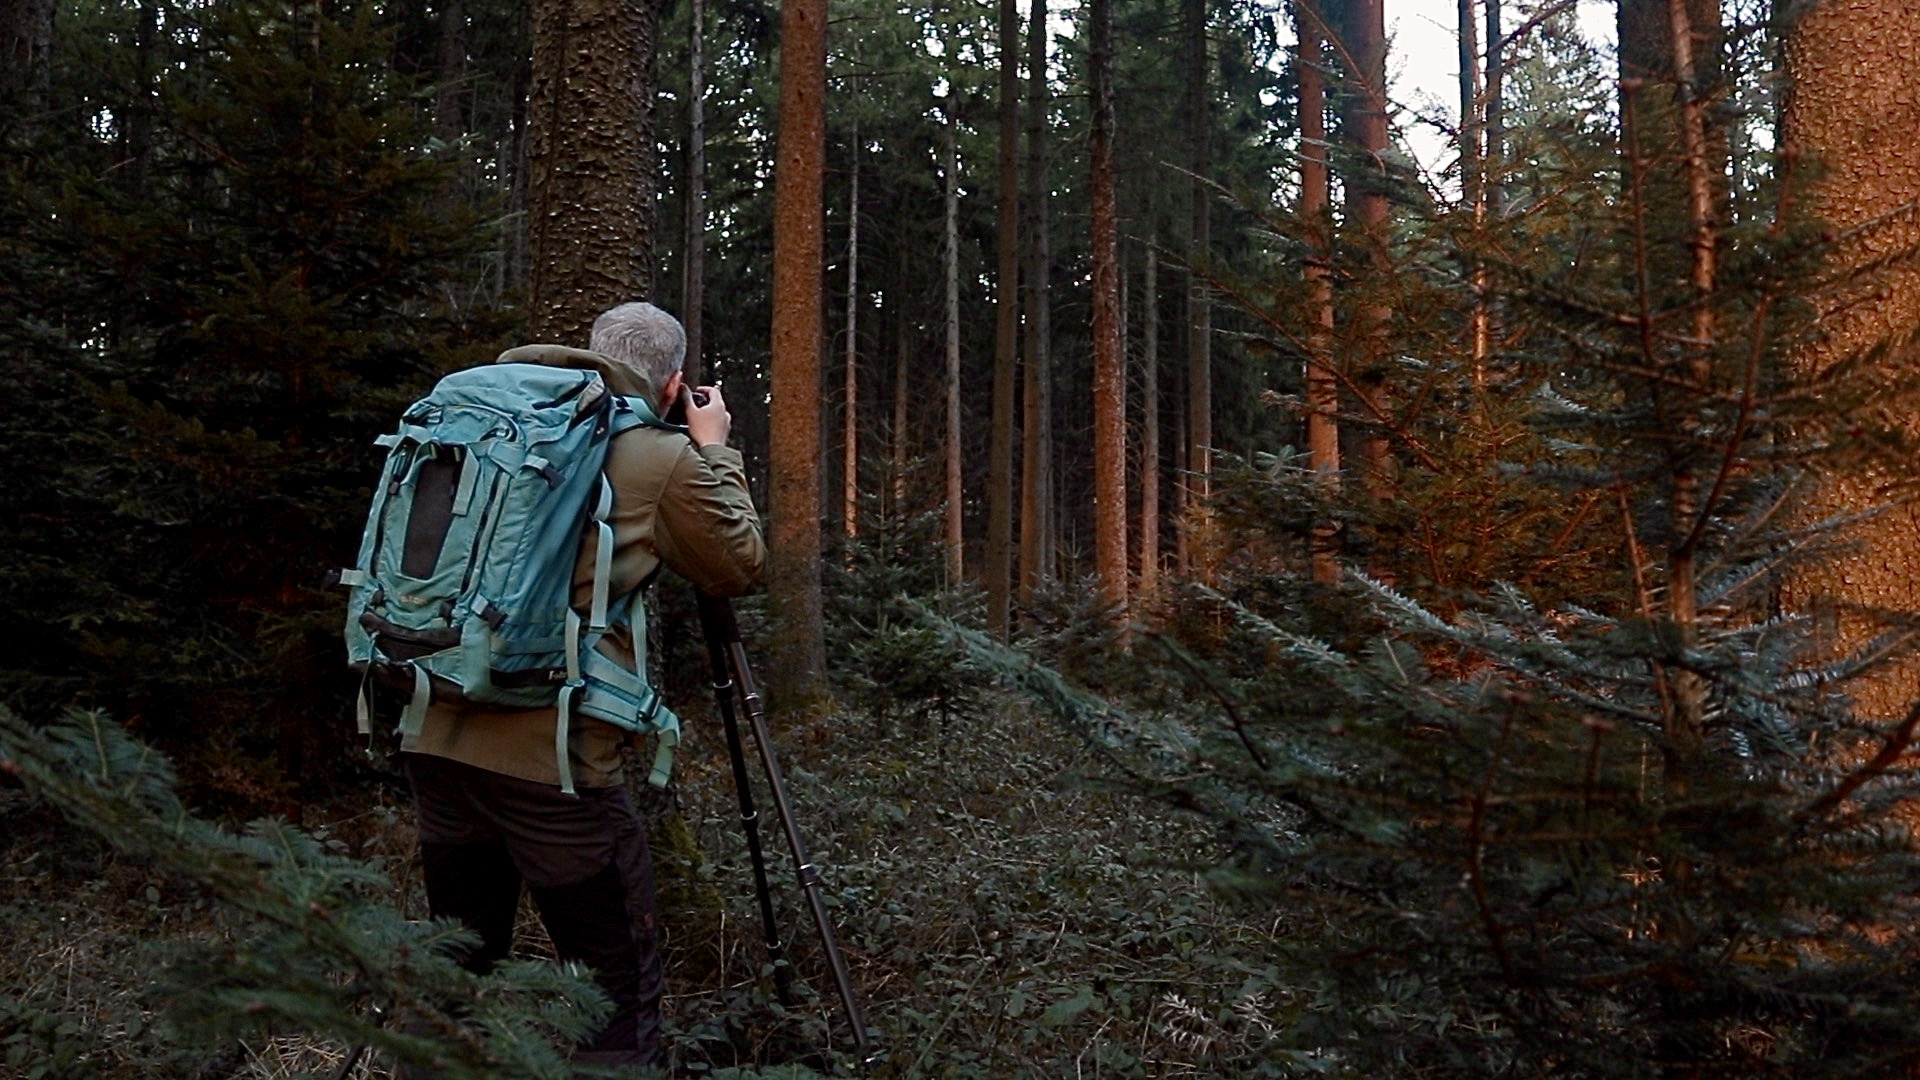 Neues Video! Abendlicht in einem Wald fotografieren